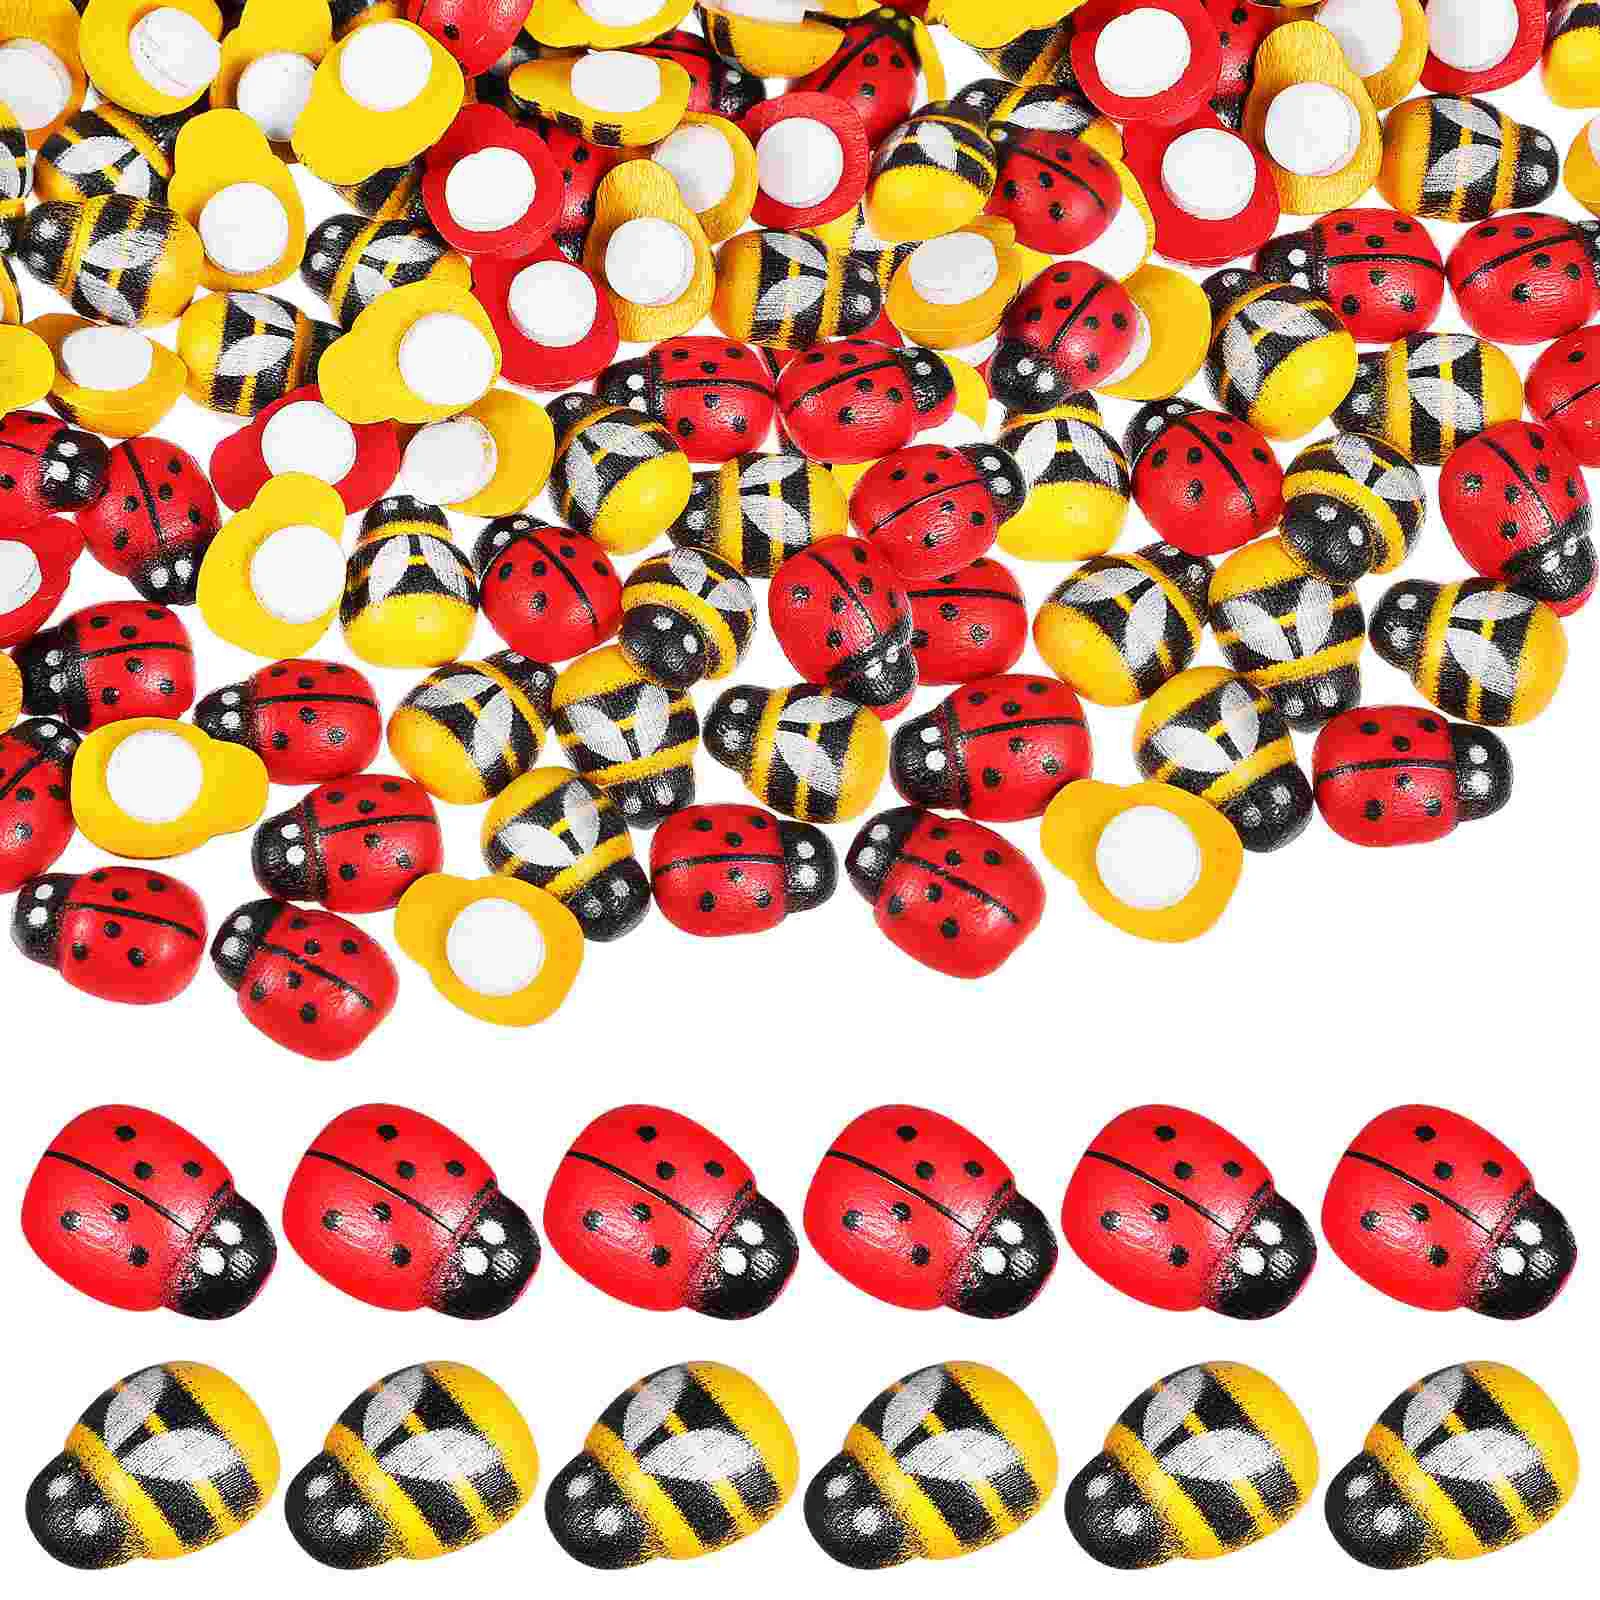 

Ladybug Decor Stickers Lady Wood Bugs Tiny Decorations Embellishments Flatback Beads Bumble 3D Embellishment Decoration Buttons